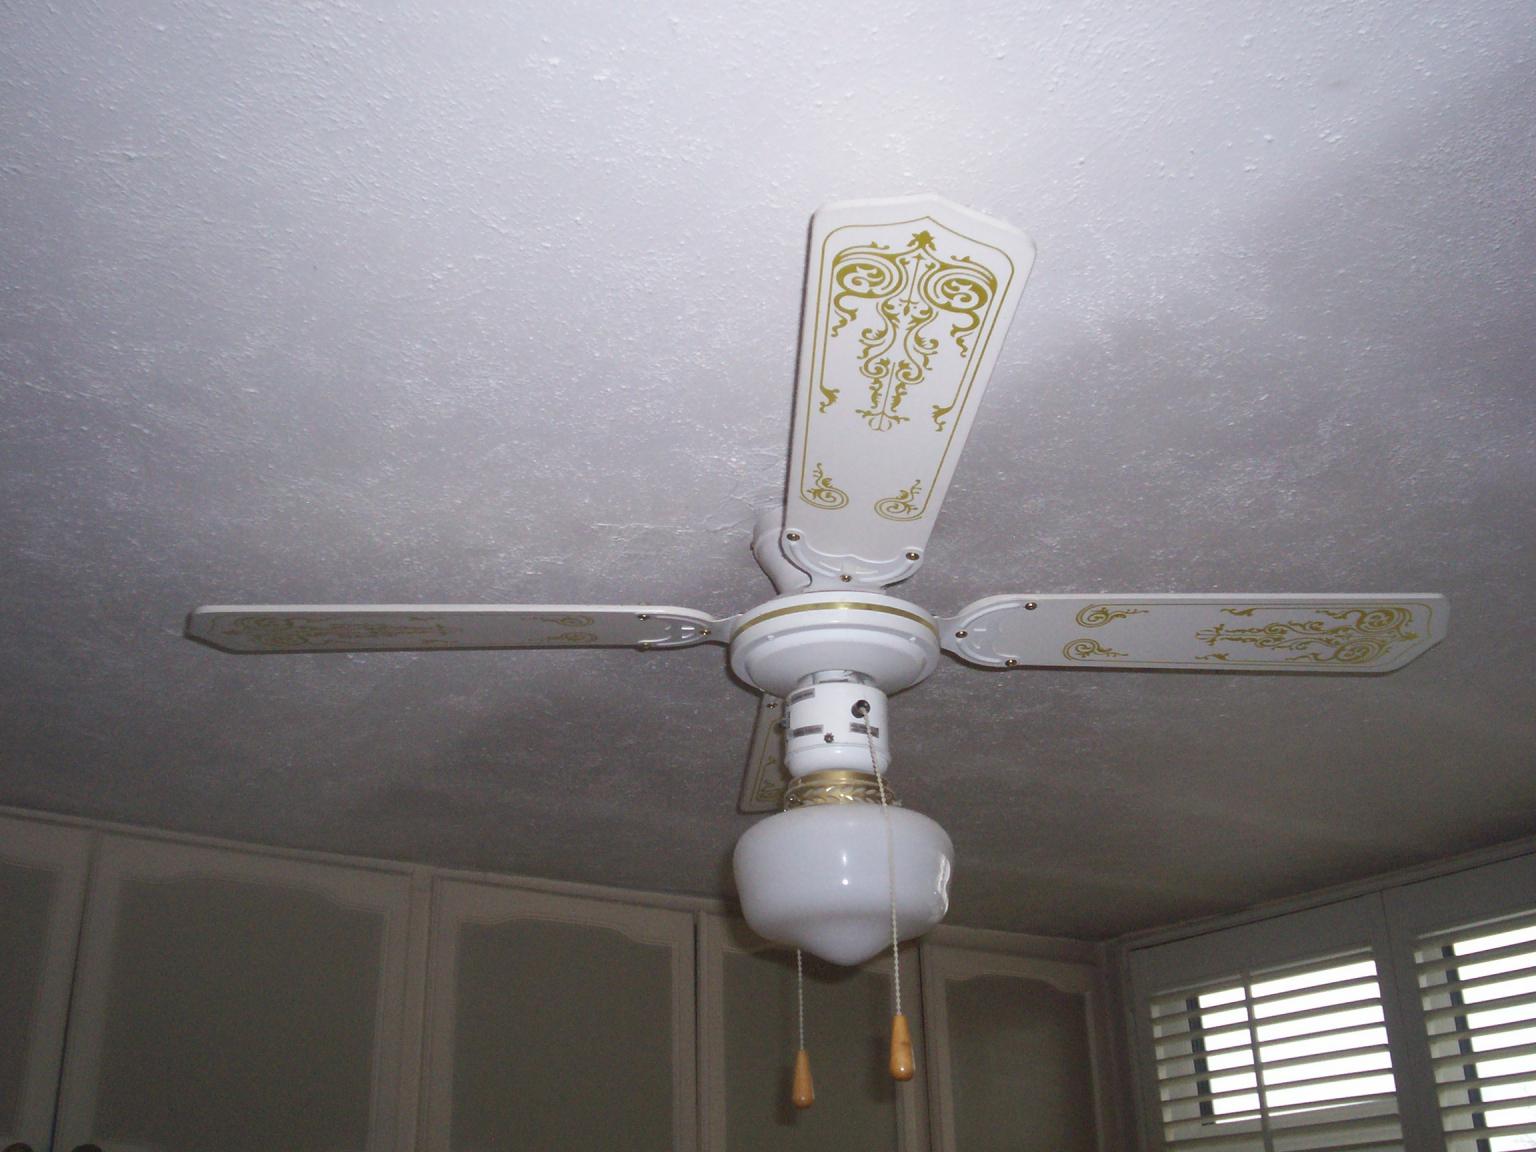 Ceiling Light Fan In Bd12 Bradford For 10 00 For Sale Shpock